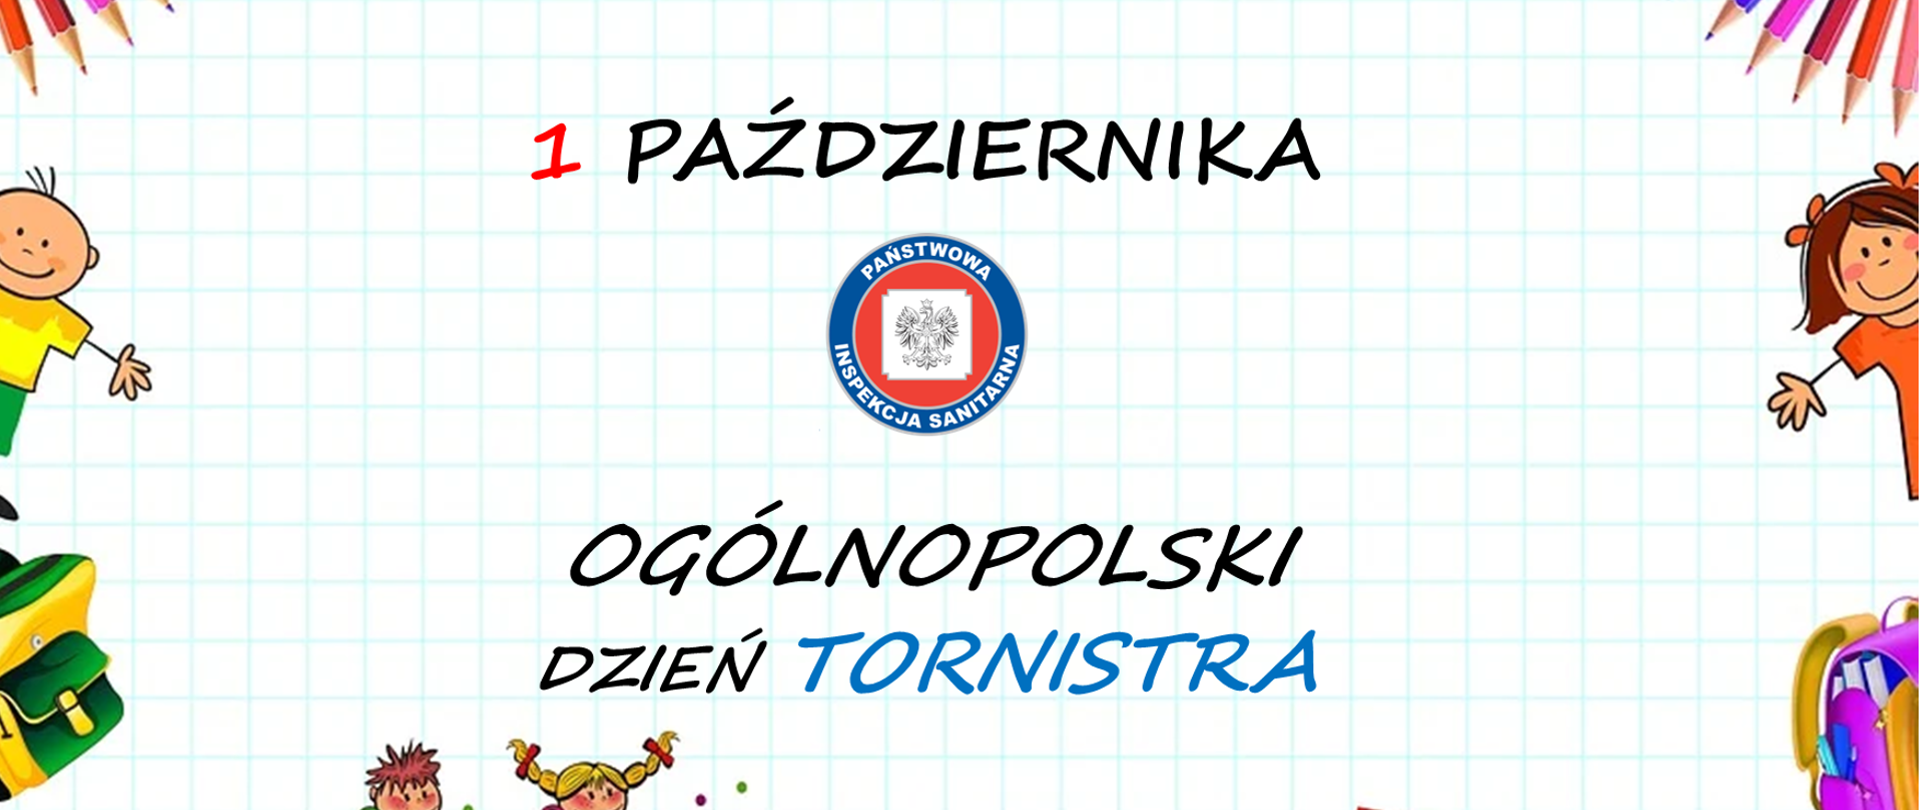 Ogólnopolski Dzień Tornistra